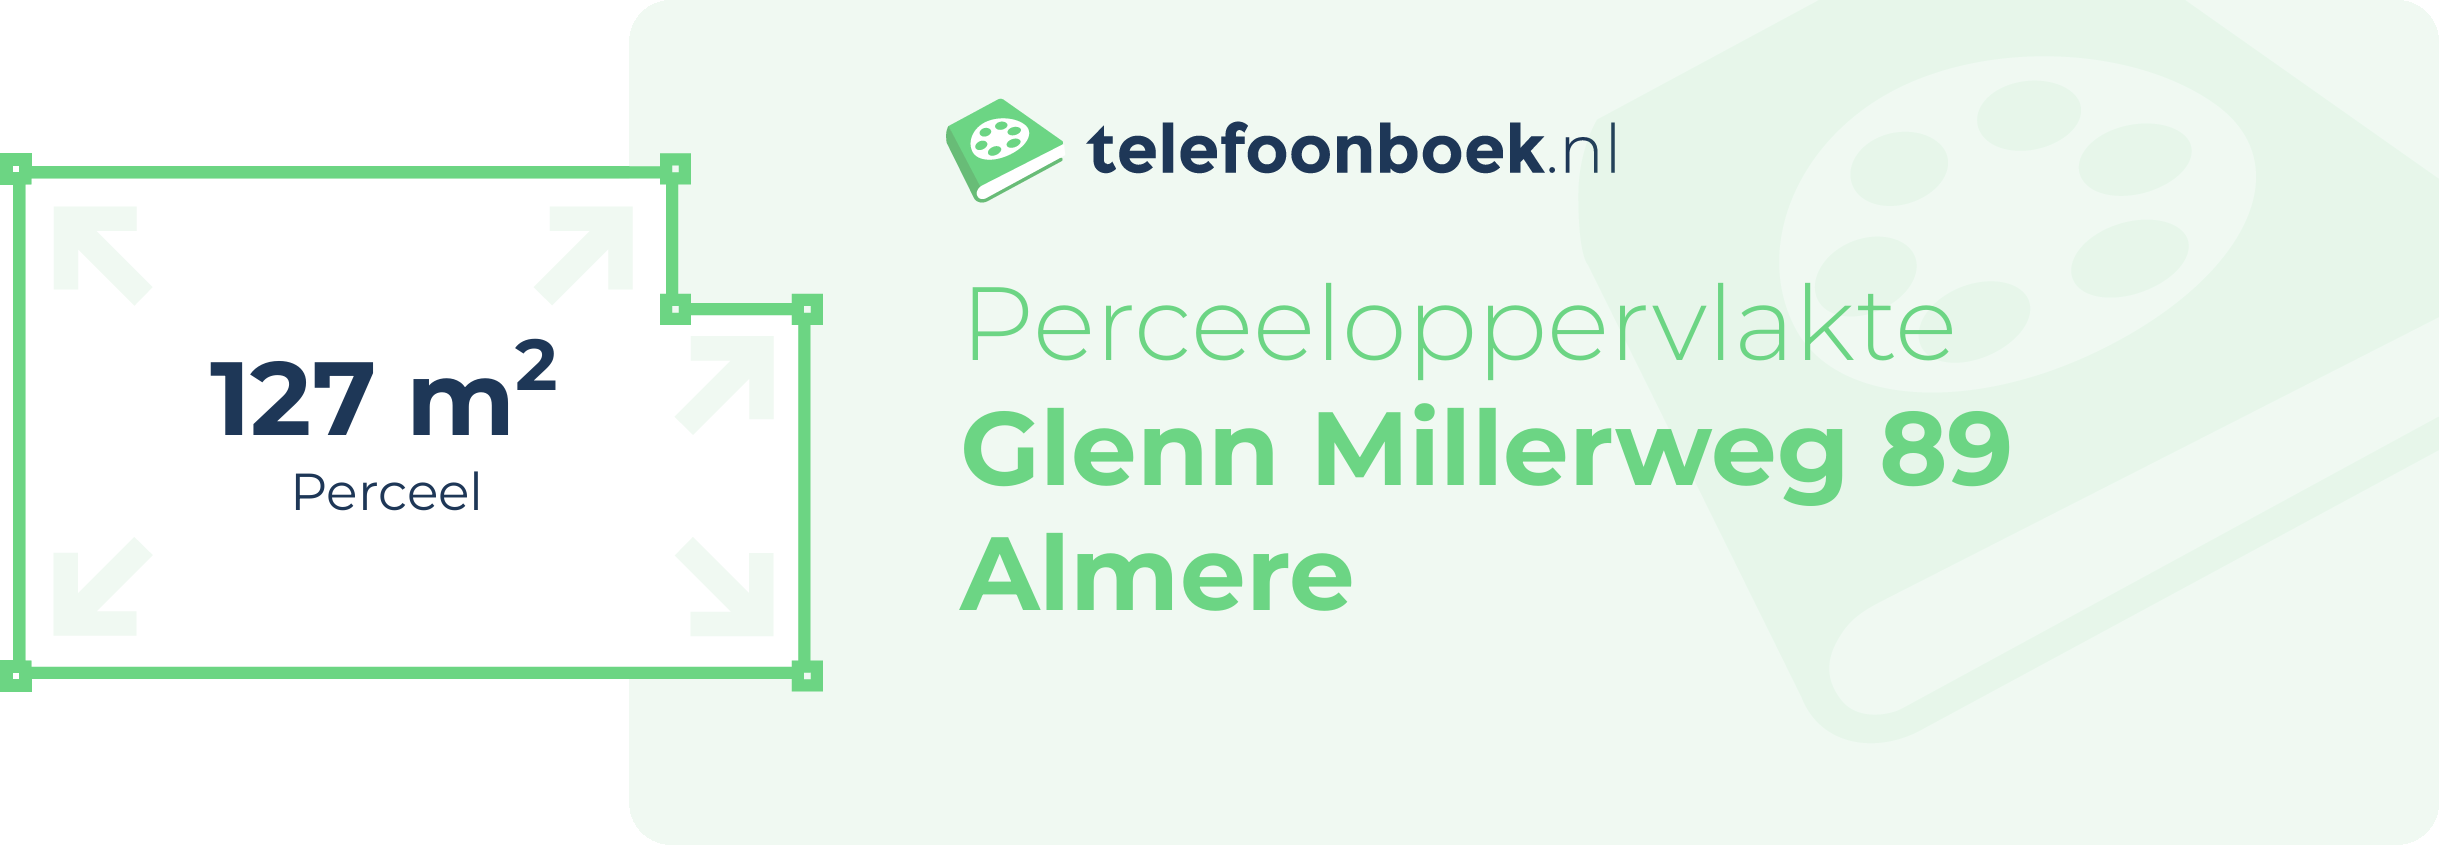 Perceeloppervlakte Glenn Millerweg 89 Almere